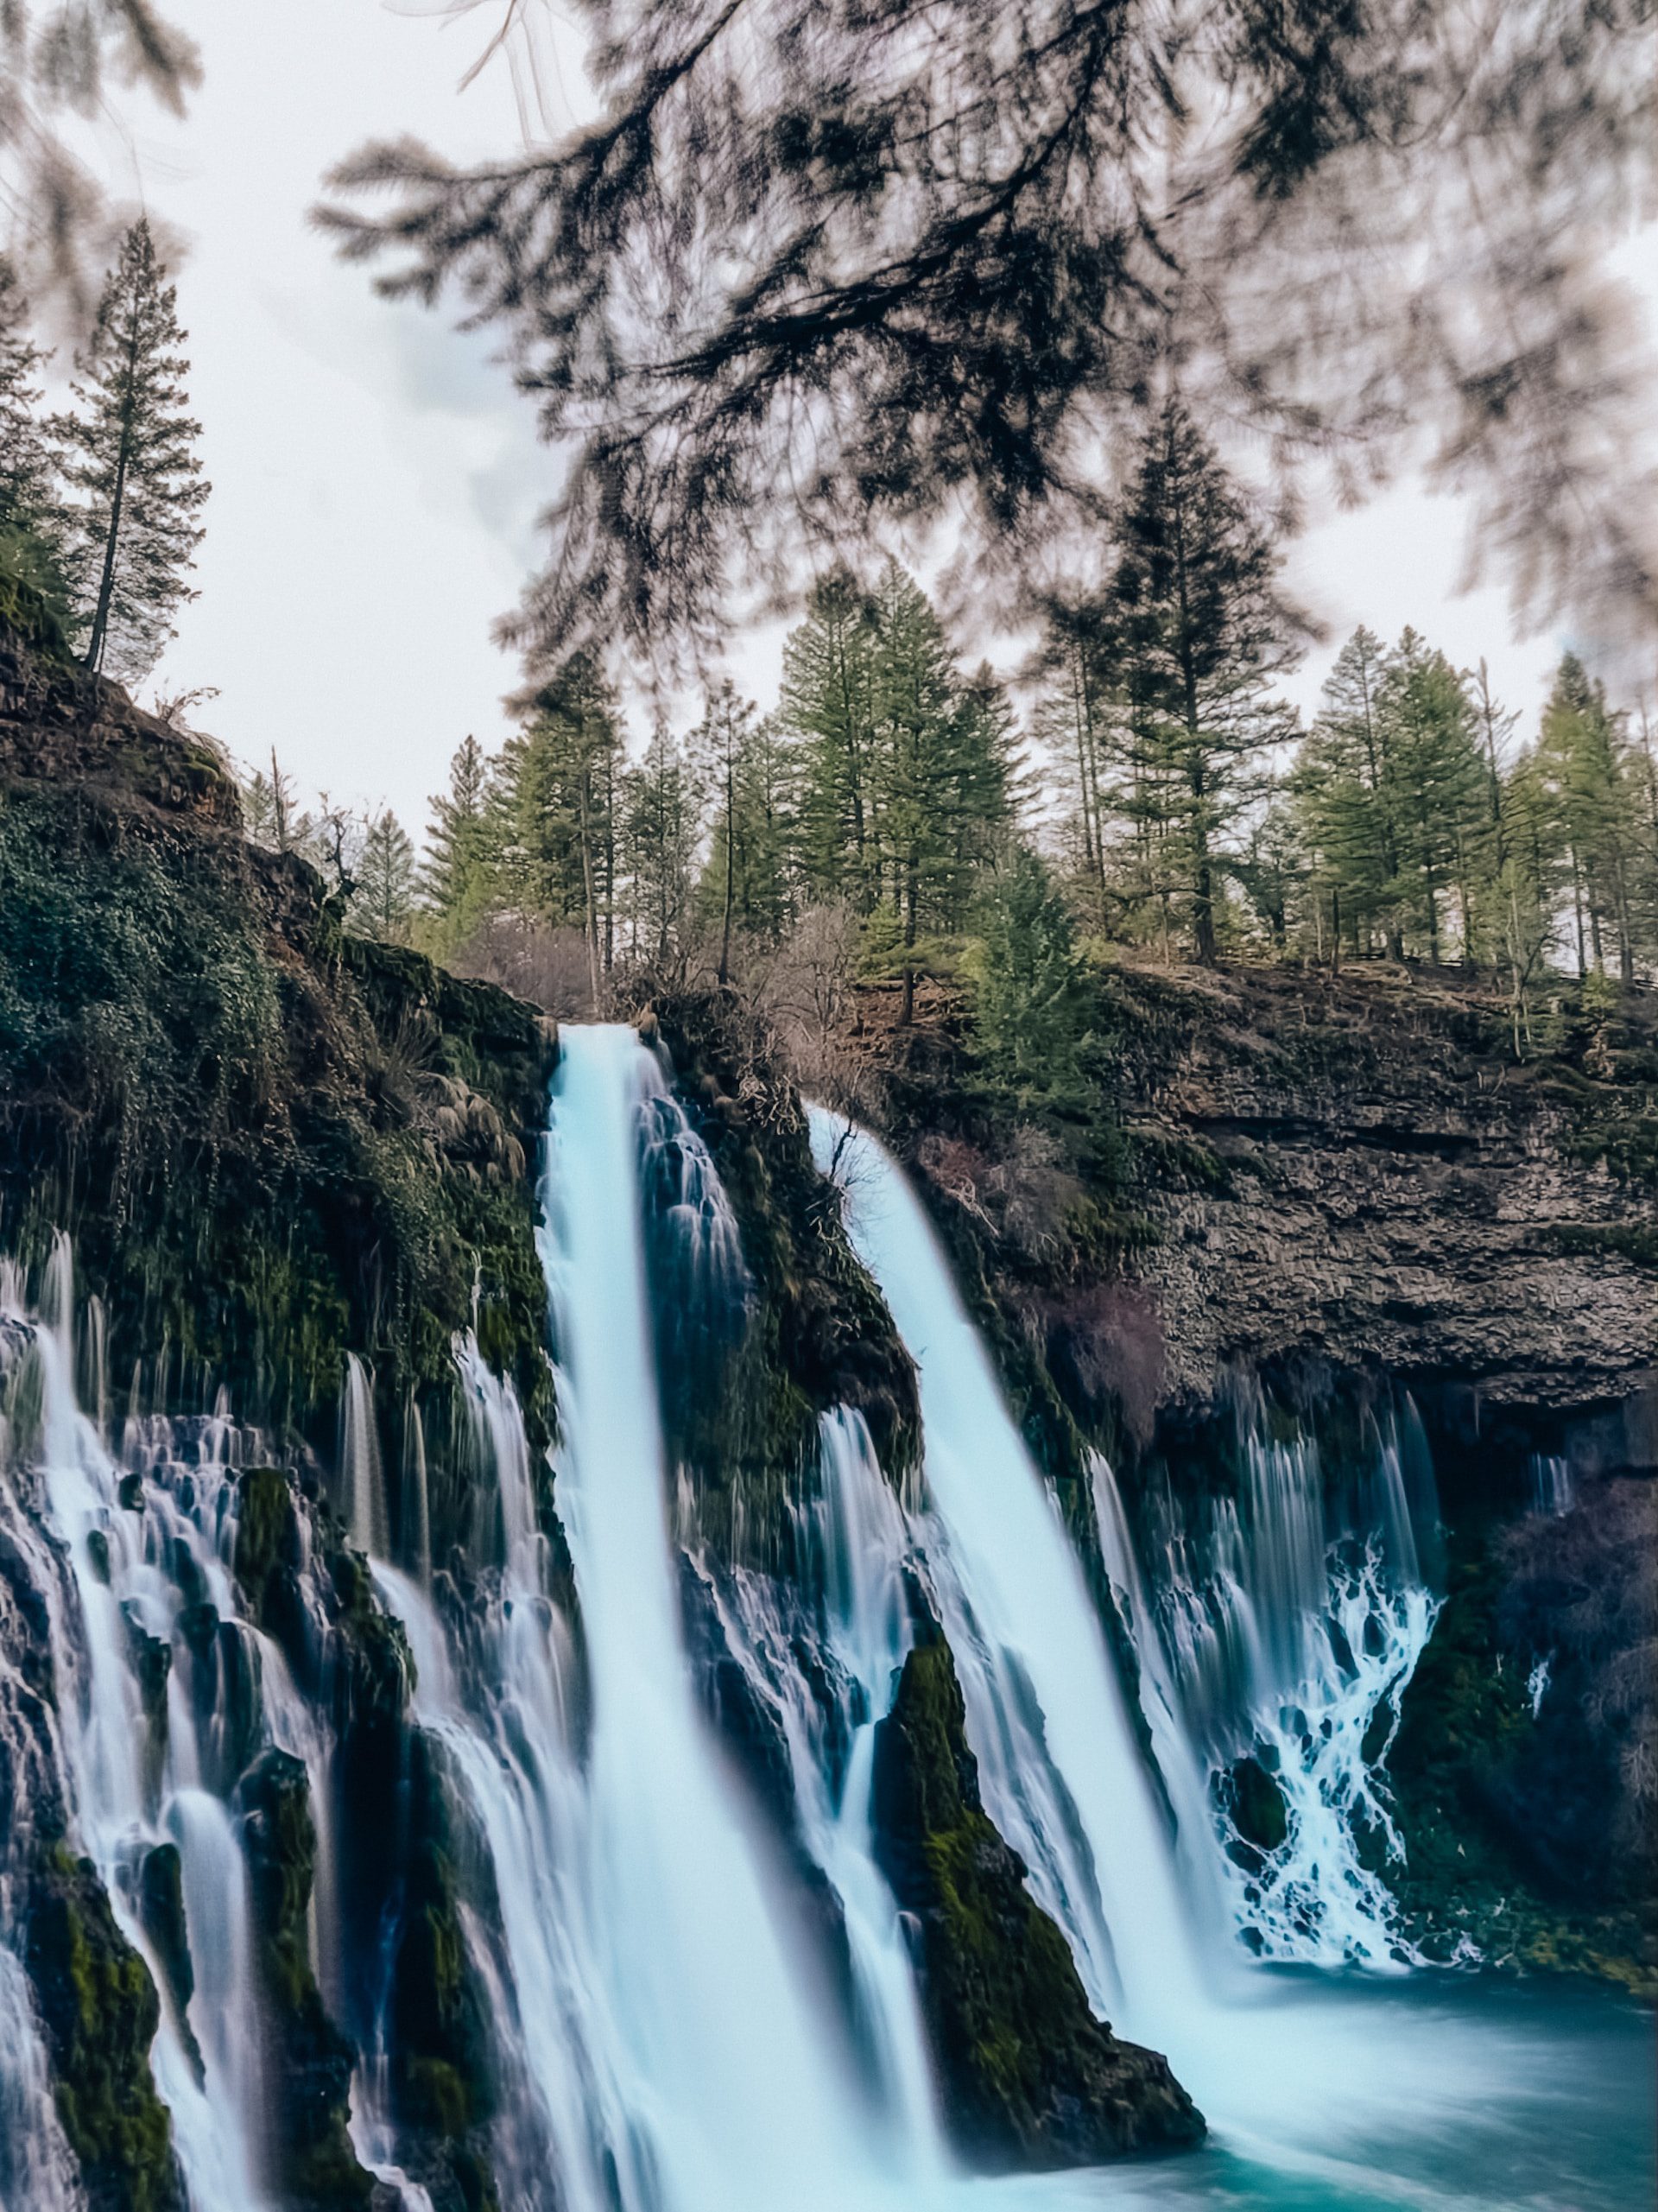 Waterfalls in forest near El Monte, California.